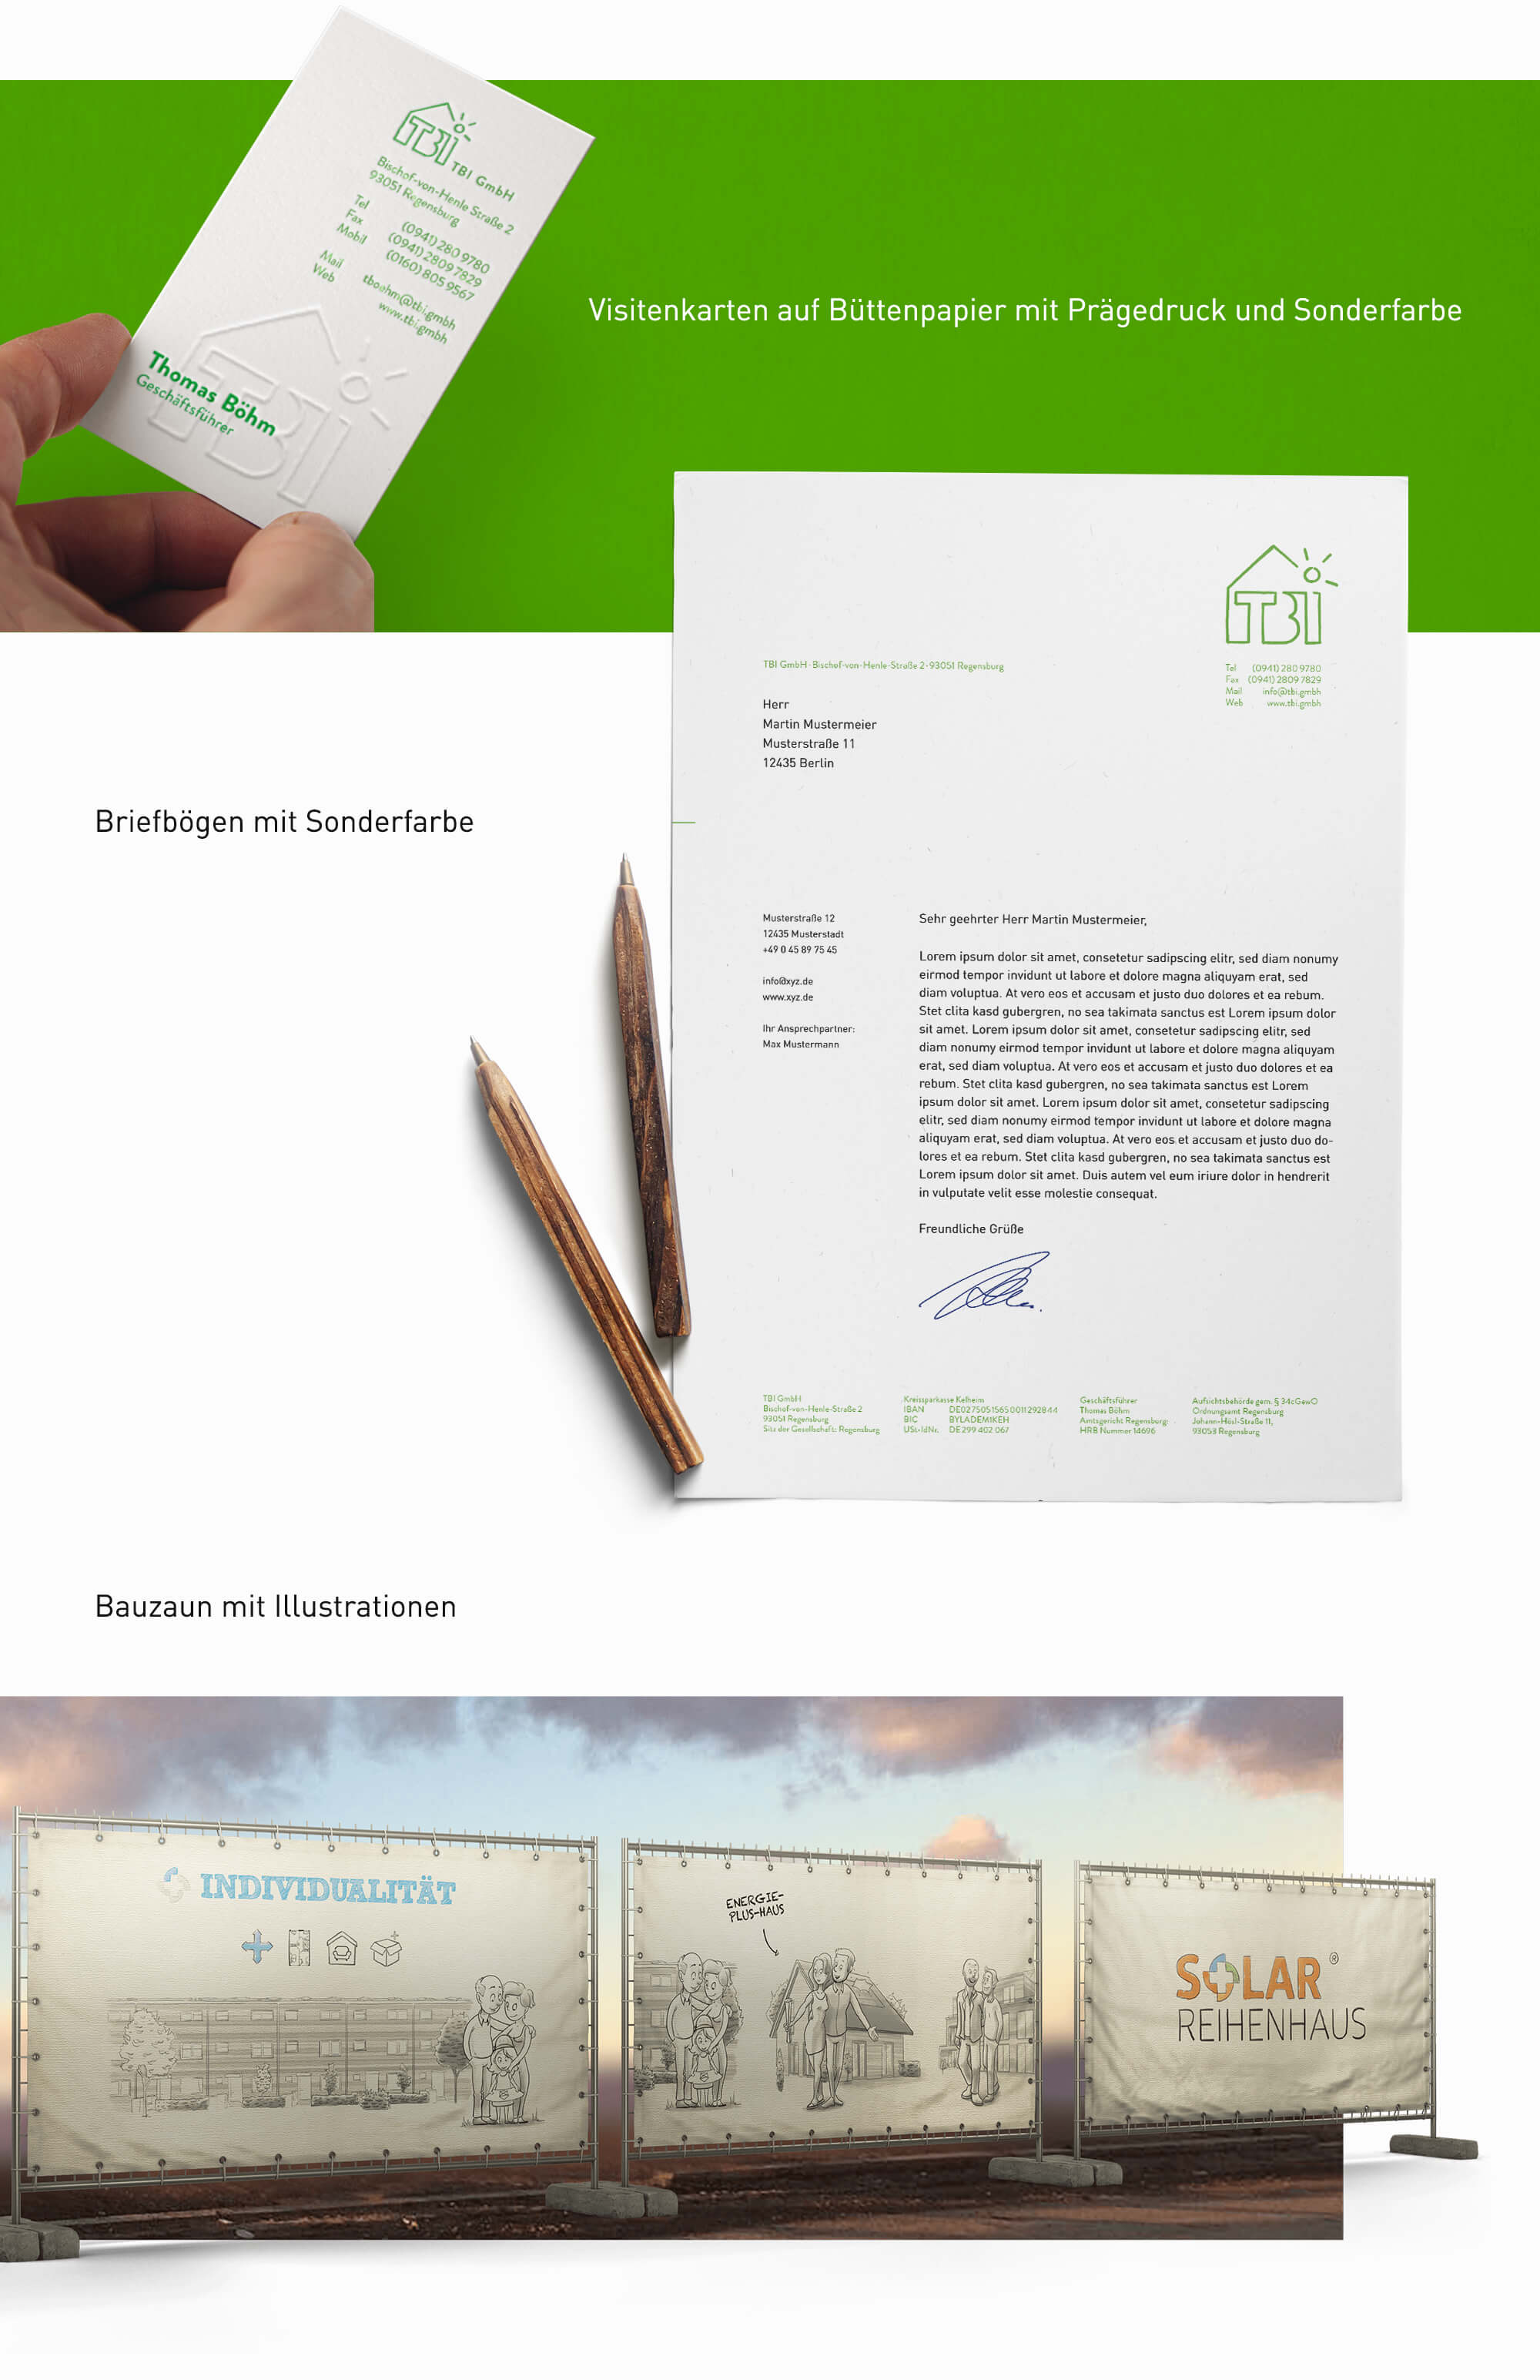 TBI Immobilien Corporate Indentity, Geschäftsausstattung, diverse Printmaterialien wie Poster für Bauzaun